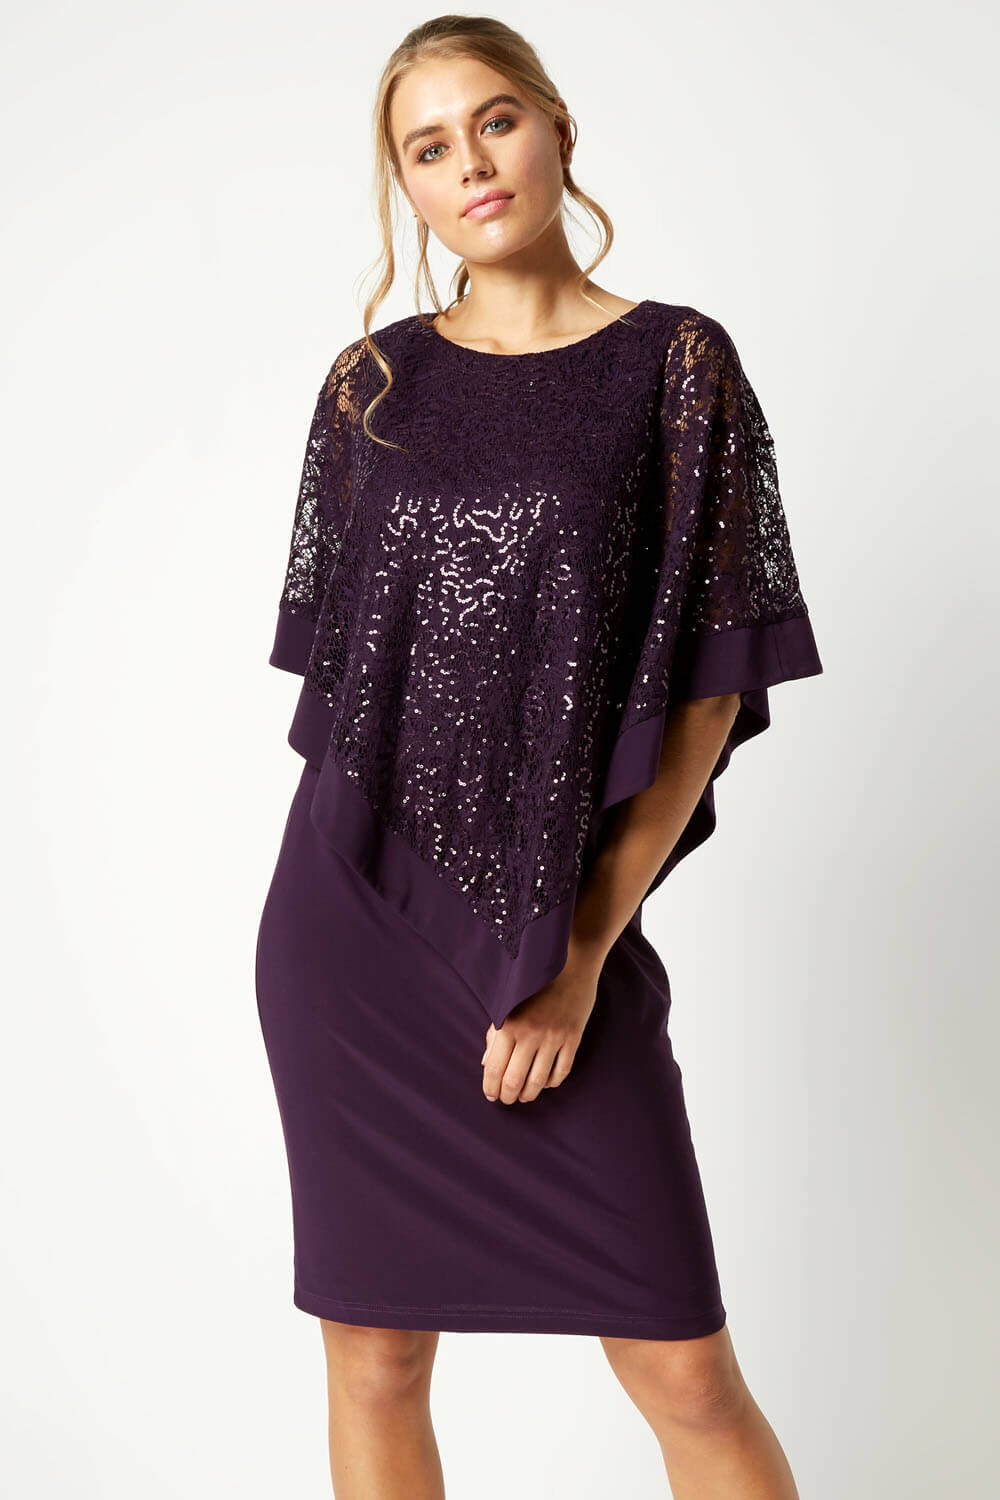 Sequin Lace Overlay Dress in Purple - Roman Originals UK